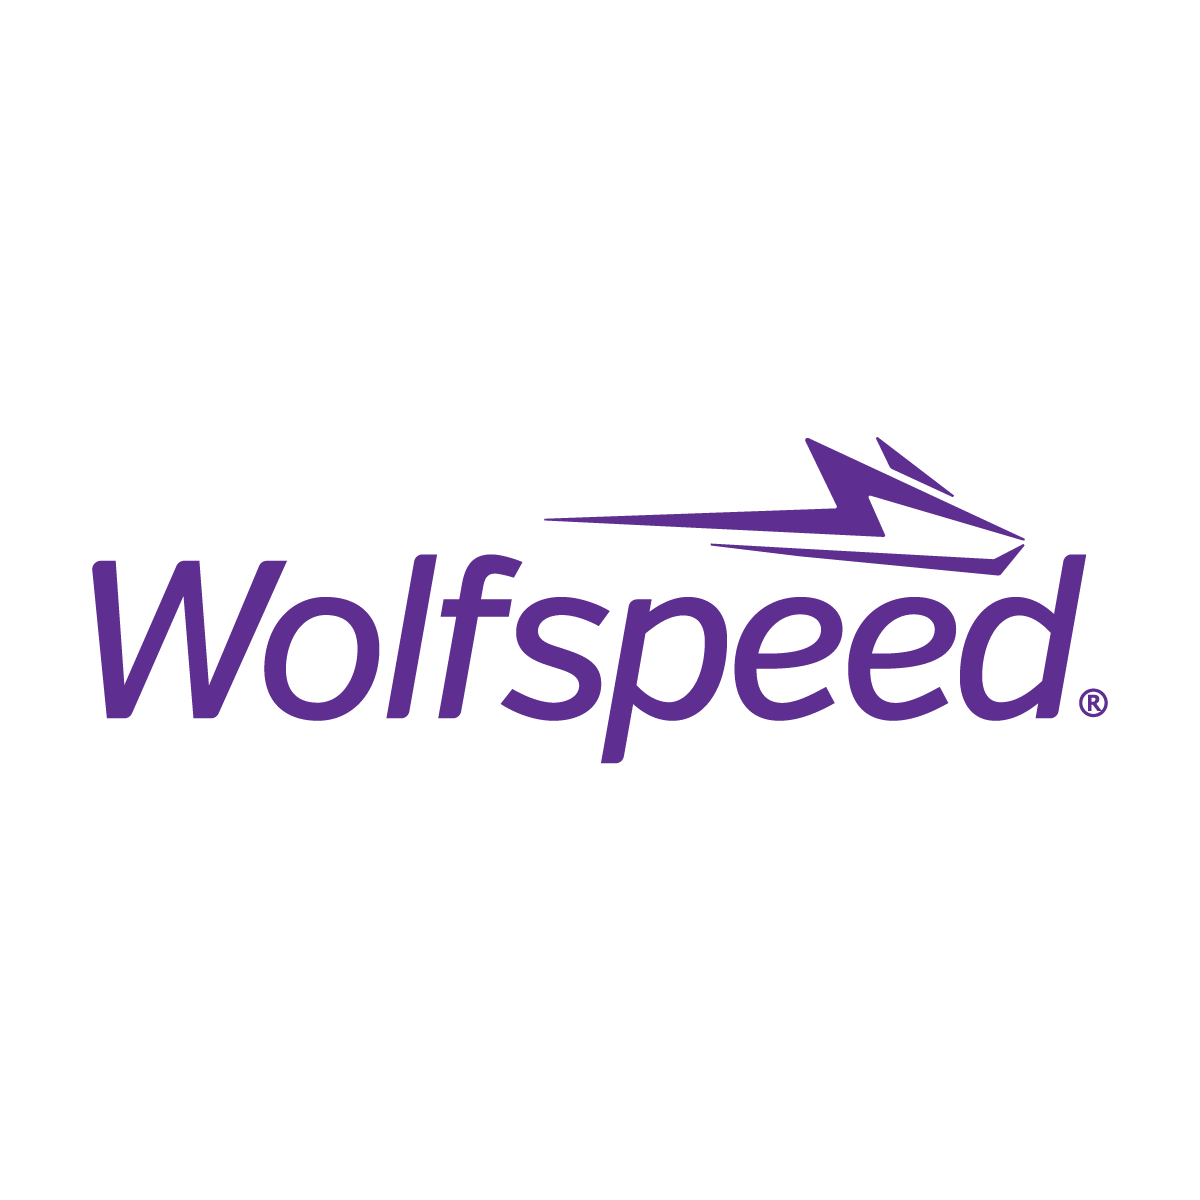 wolfspeed_logo_CMYK-01